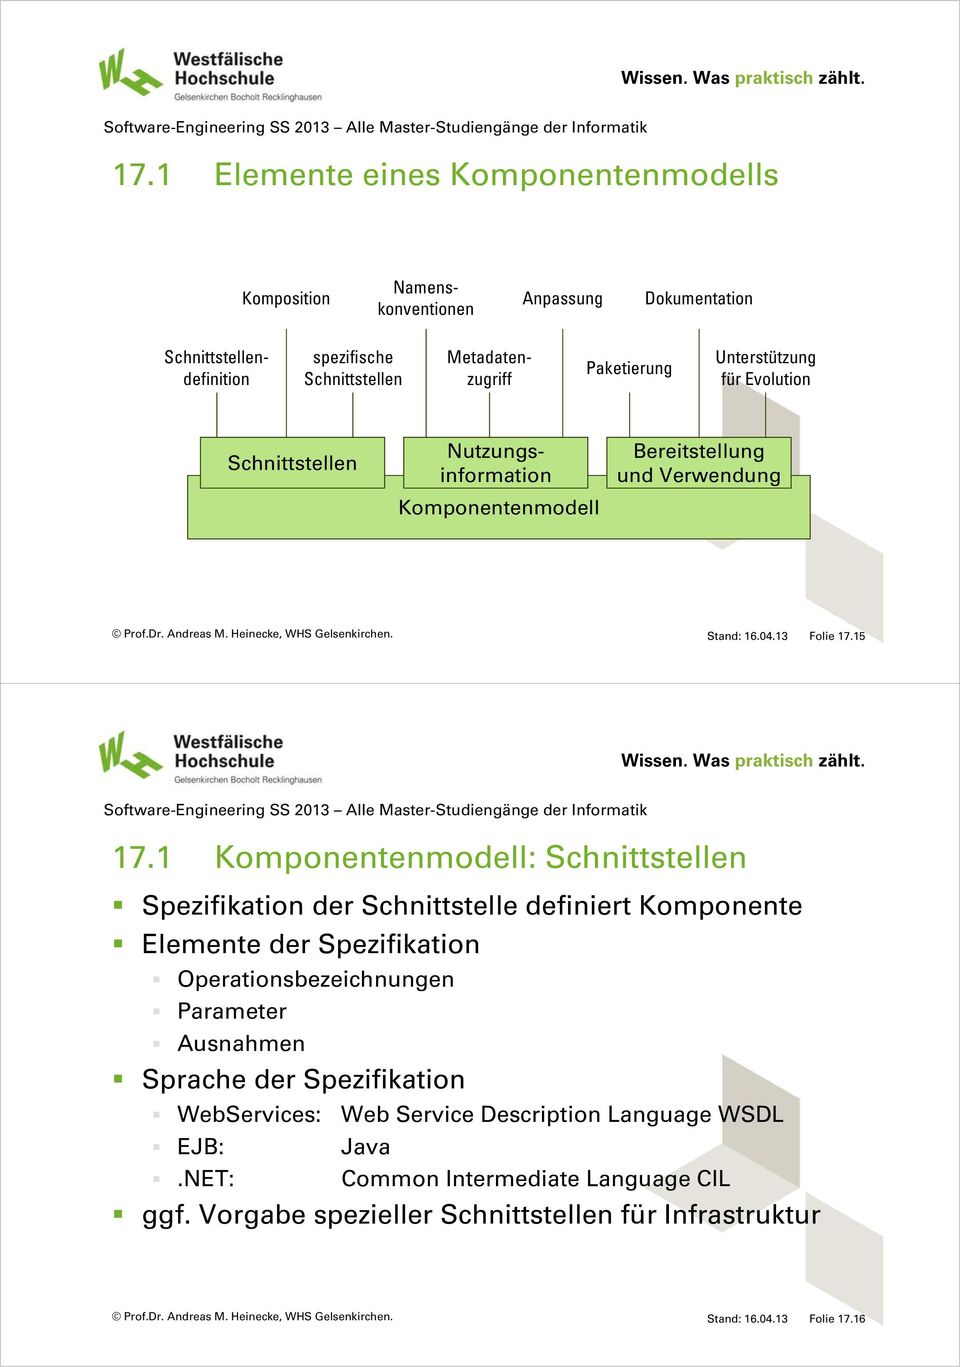 1 Komponentenmodell: Schnittstellen Spezifikation der Schnittstelle definiert Komponente Elemente der Spezifikation Operationsbezeichnungen Parameter Ausnahmen Sprache der